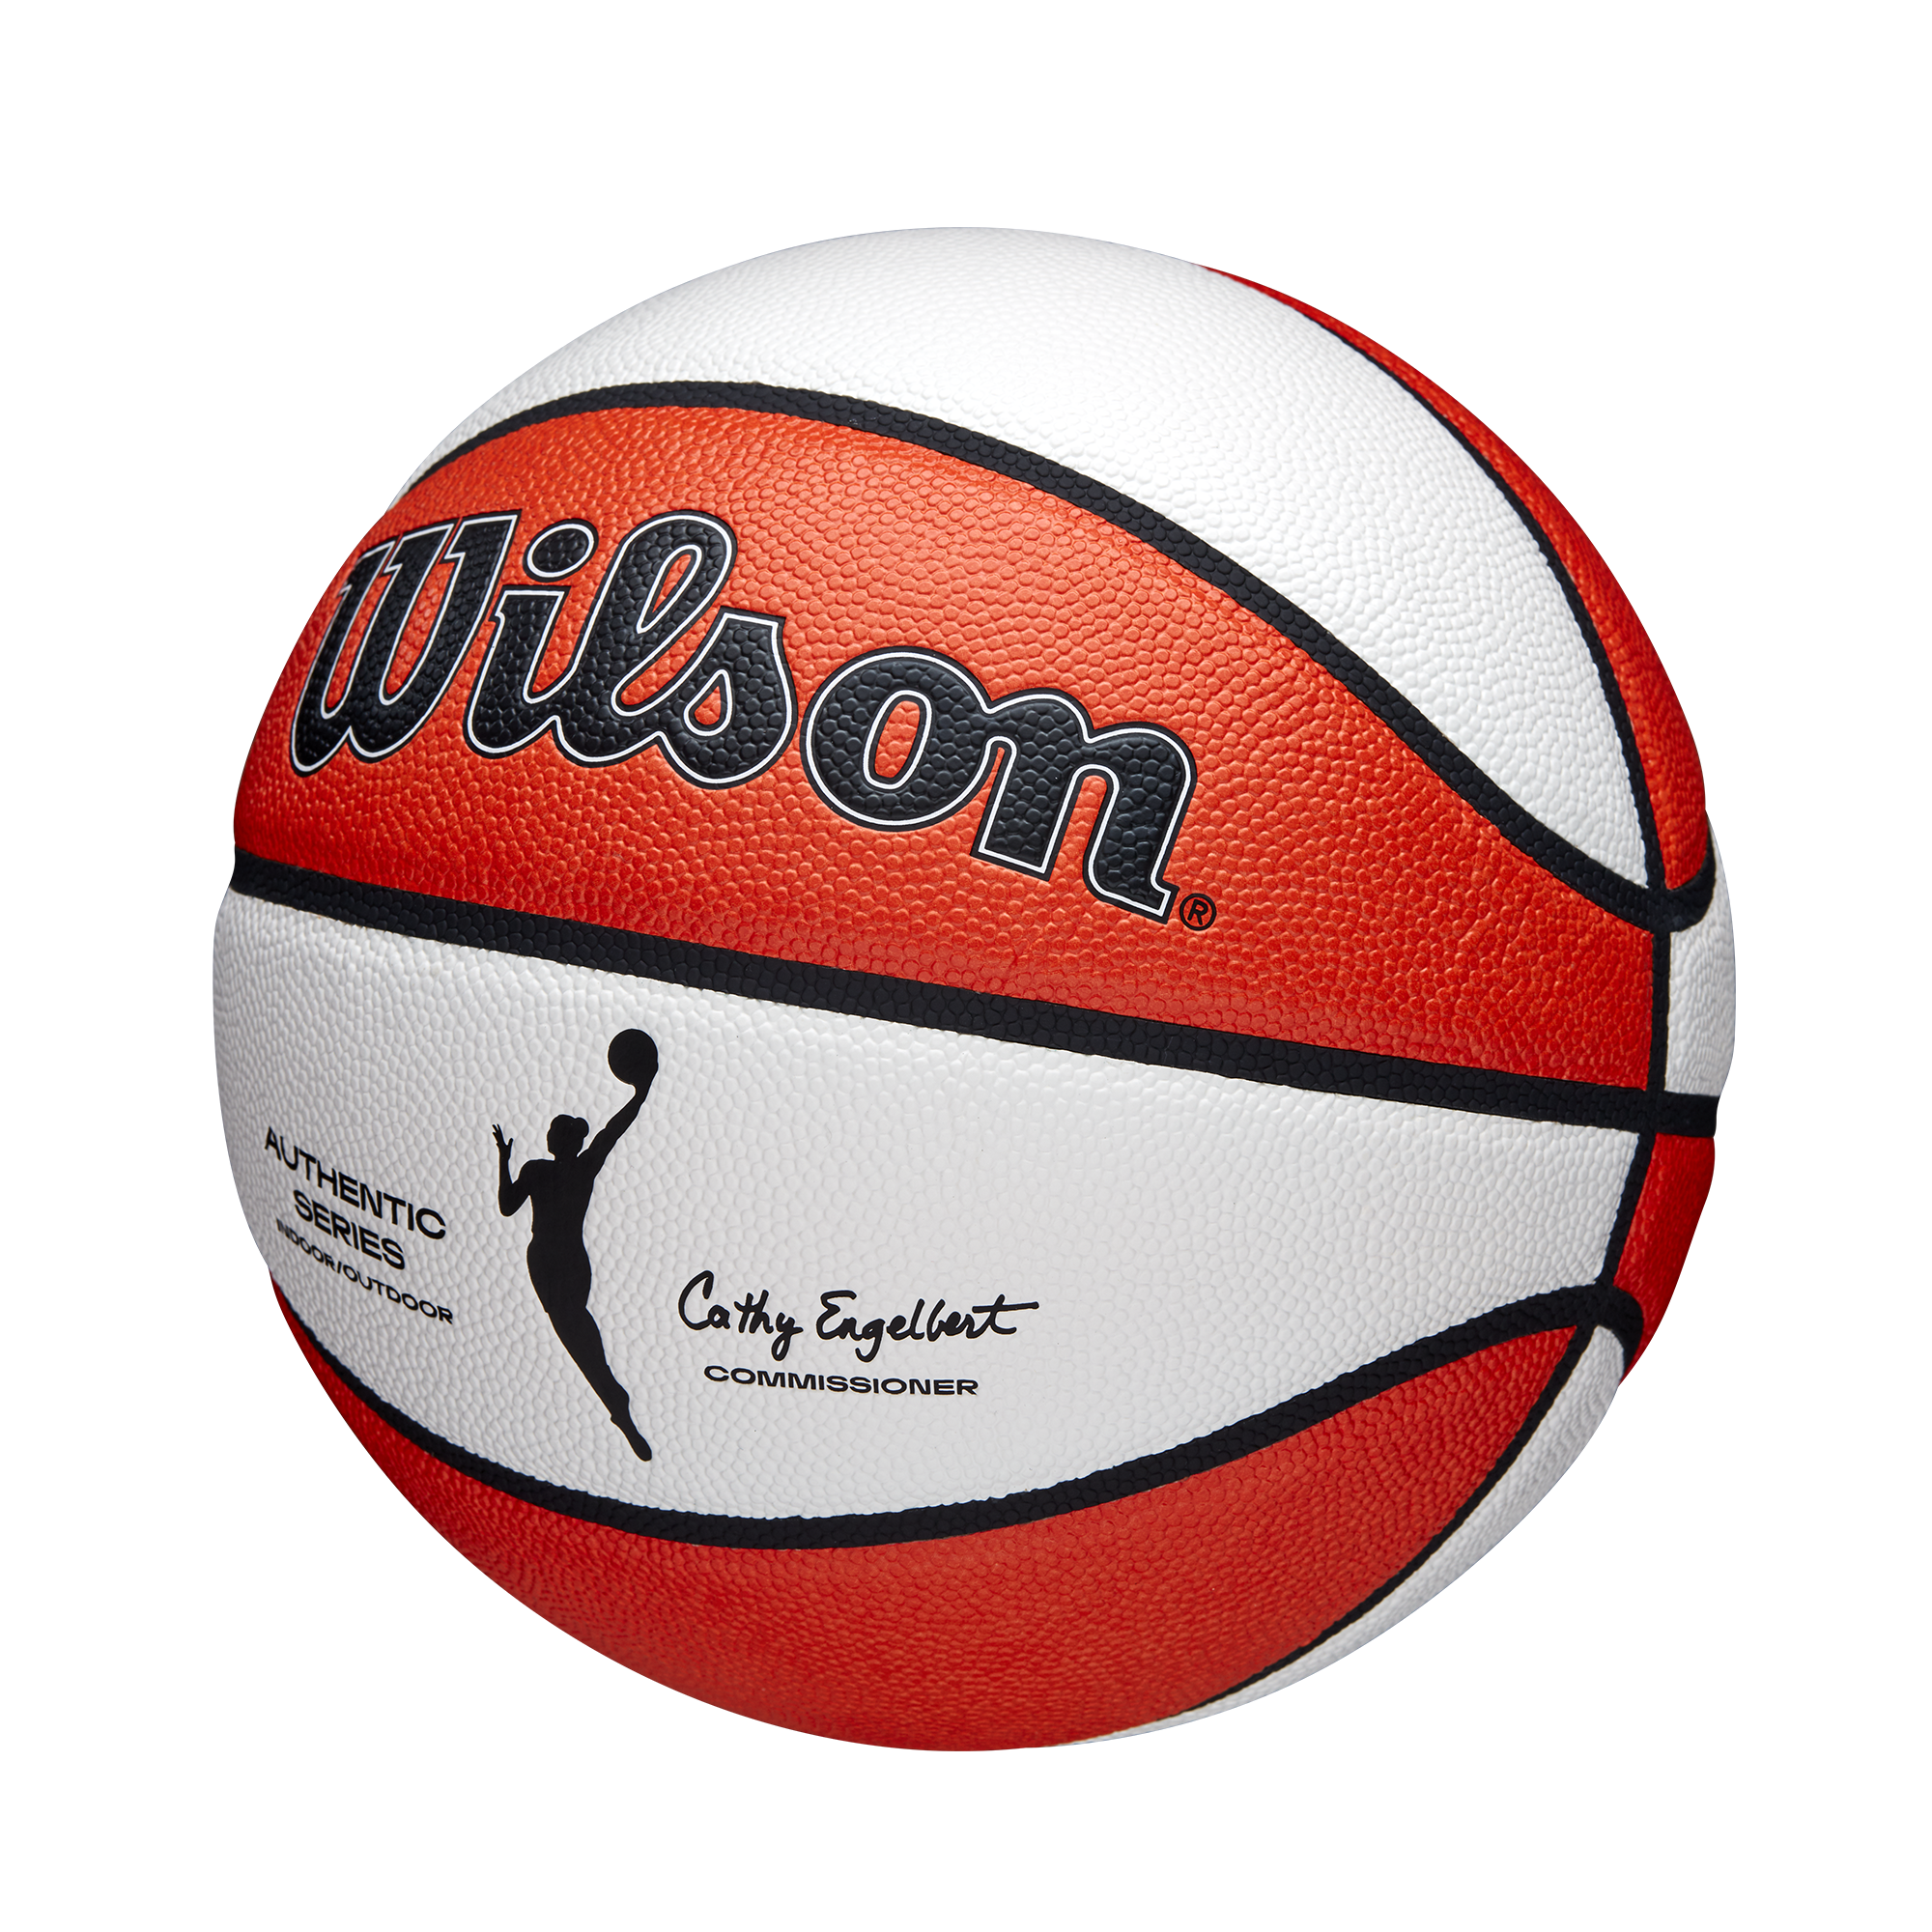 Wilson WNBA Authentic Indoor/Outdoor Basketball